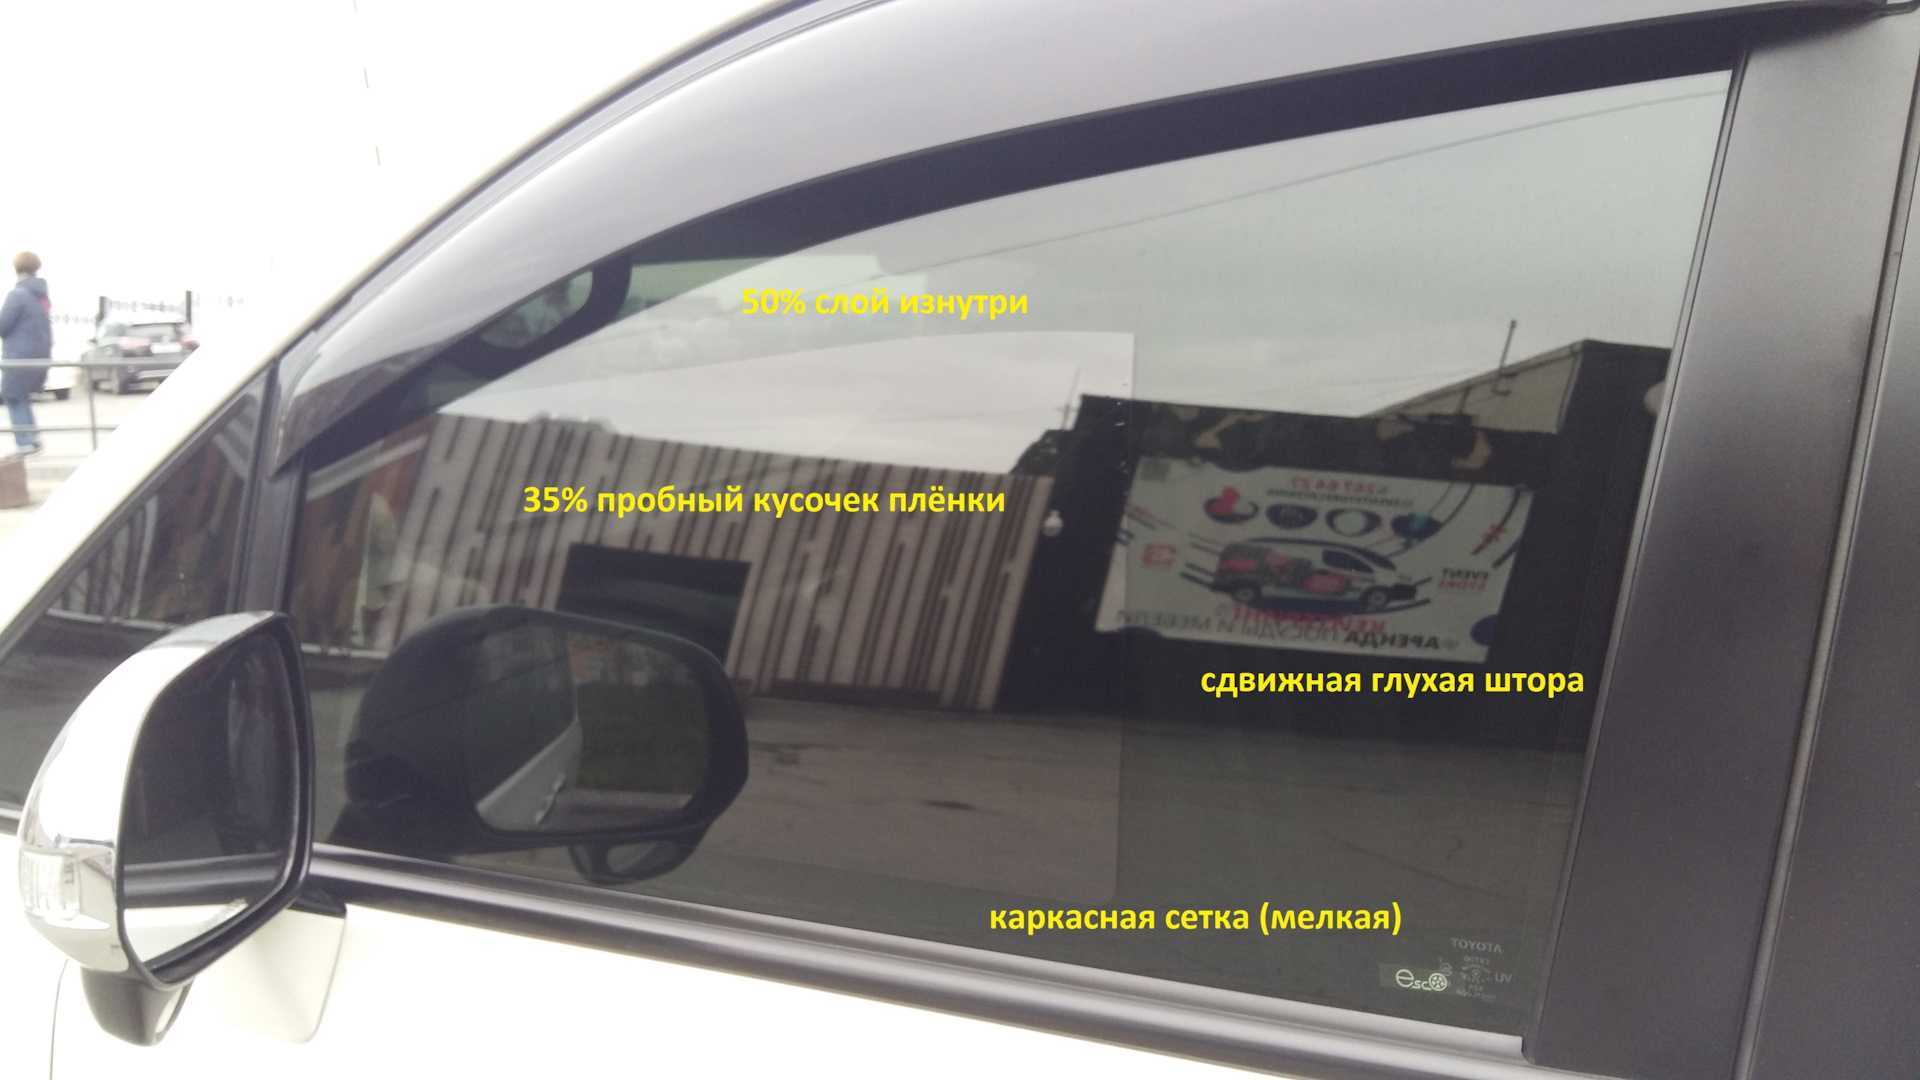 Разрешённая тонировка передних стекол автомобиля по госту на 2019 год